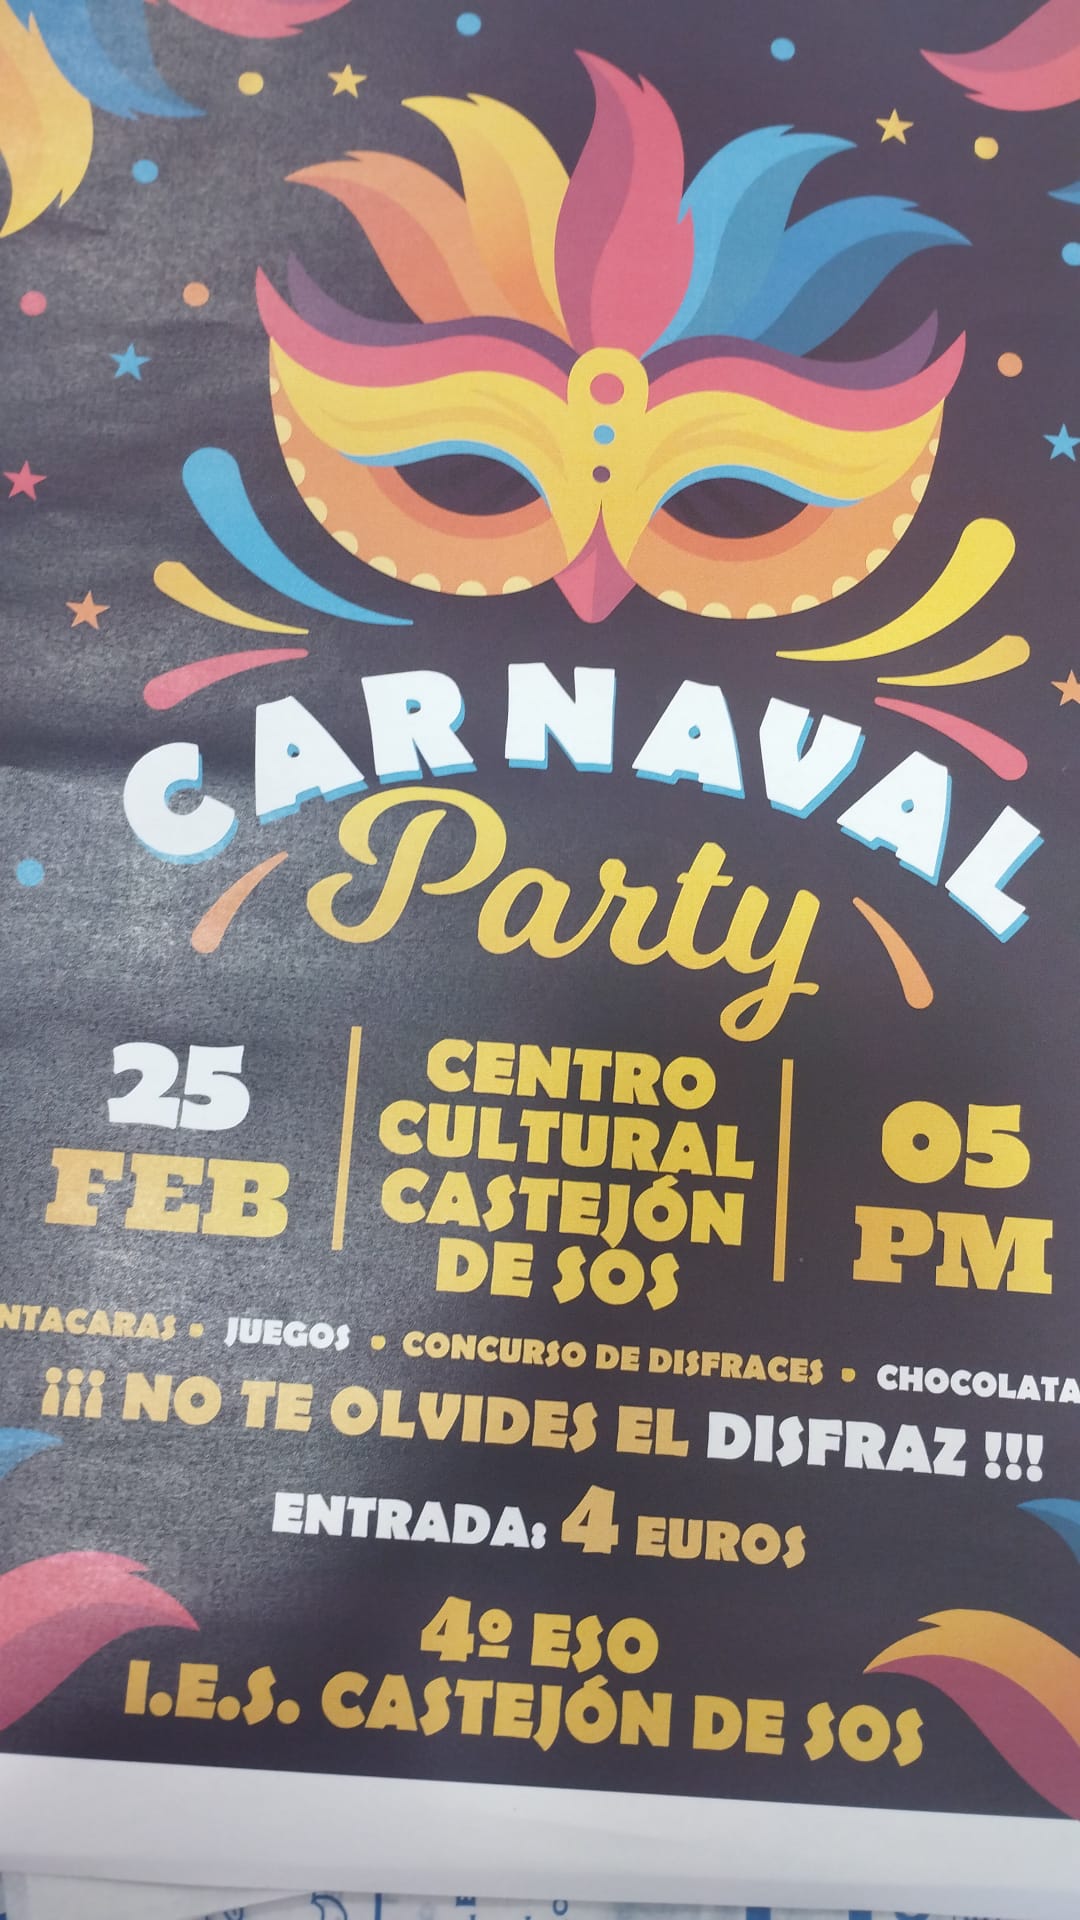 Carnaval Party 2023 | enBenas.com